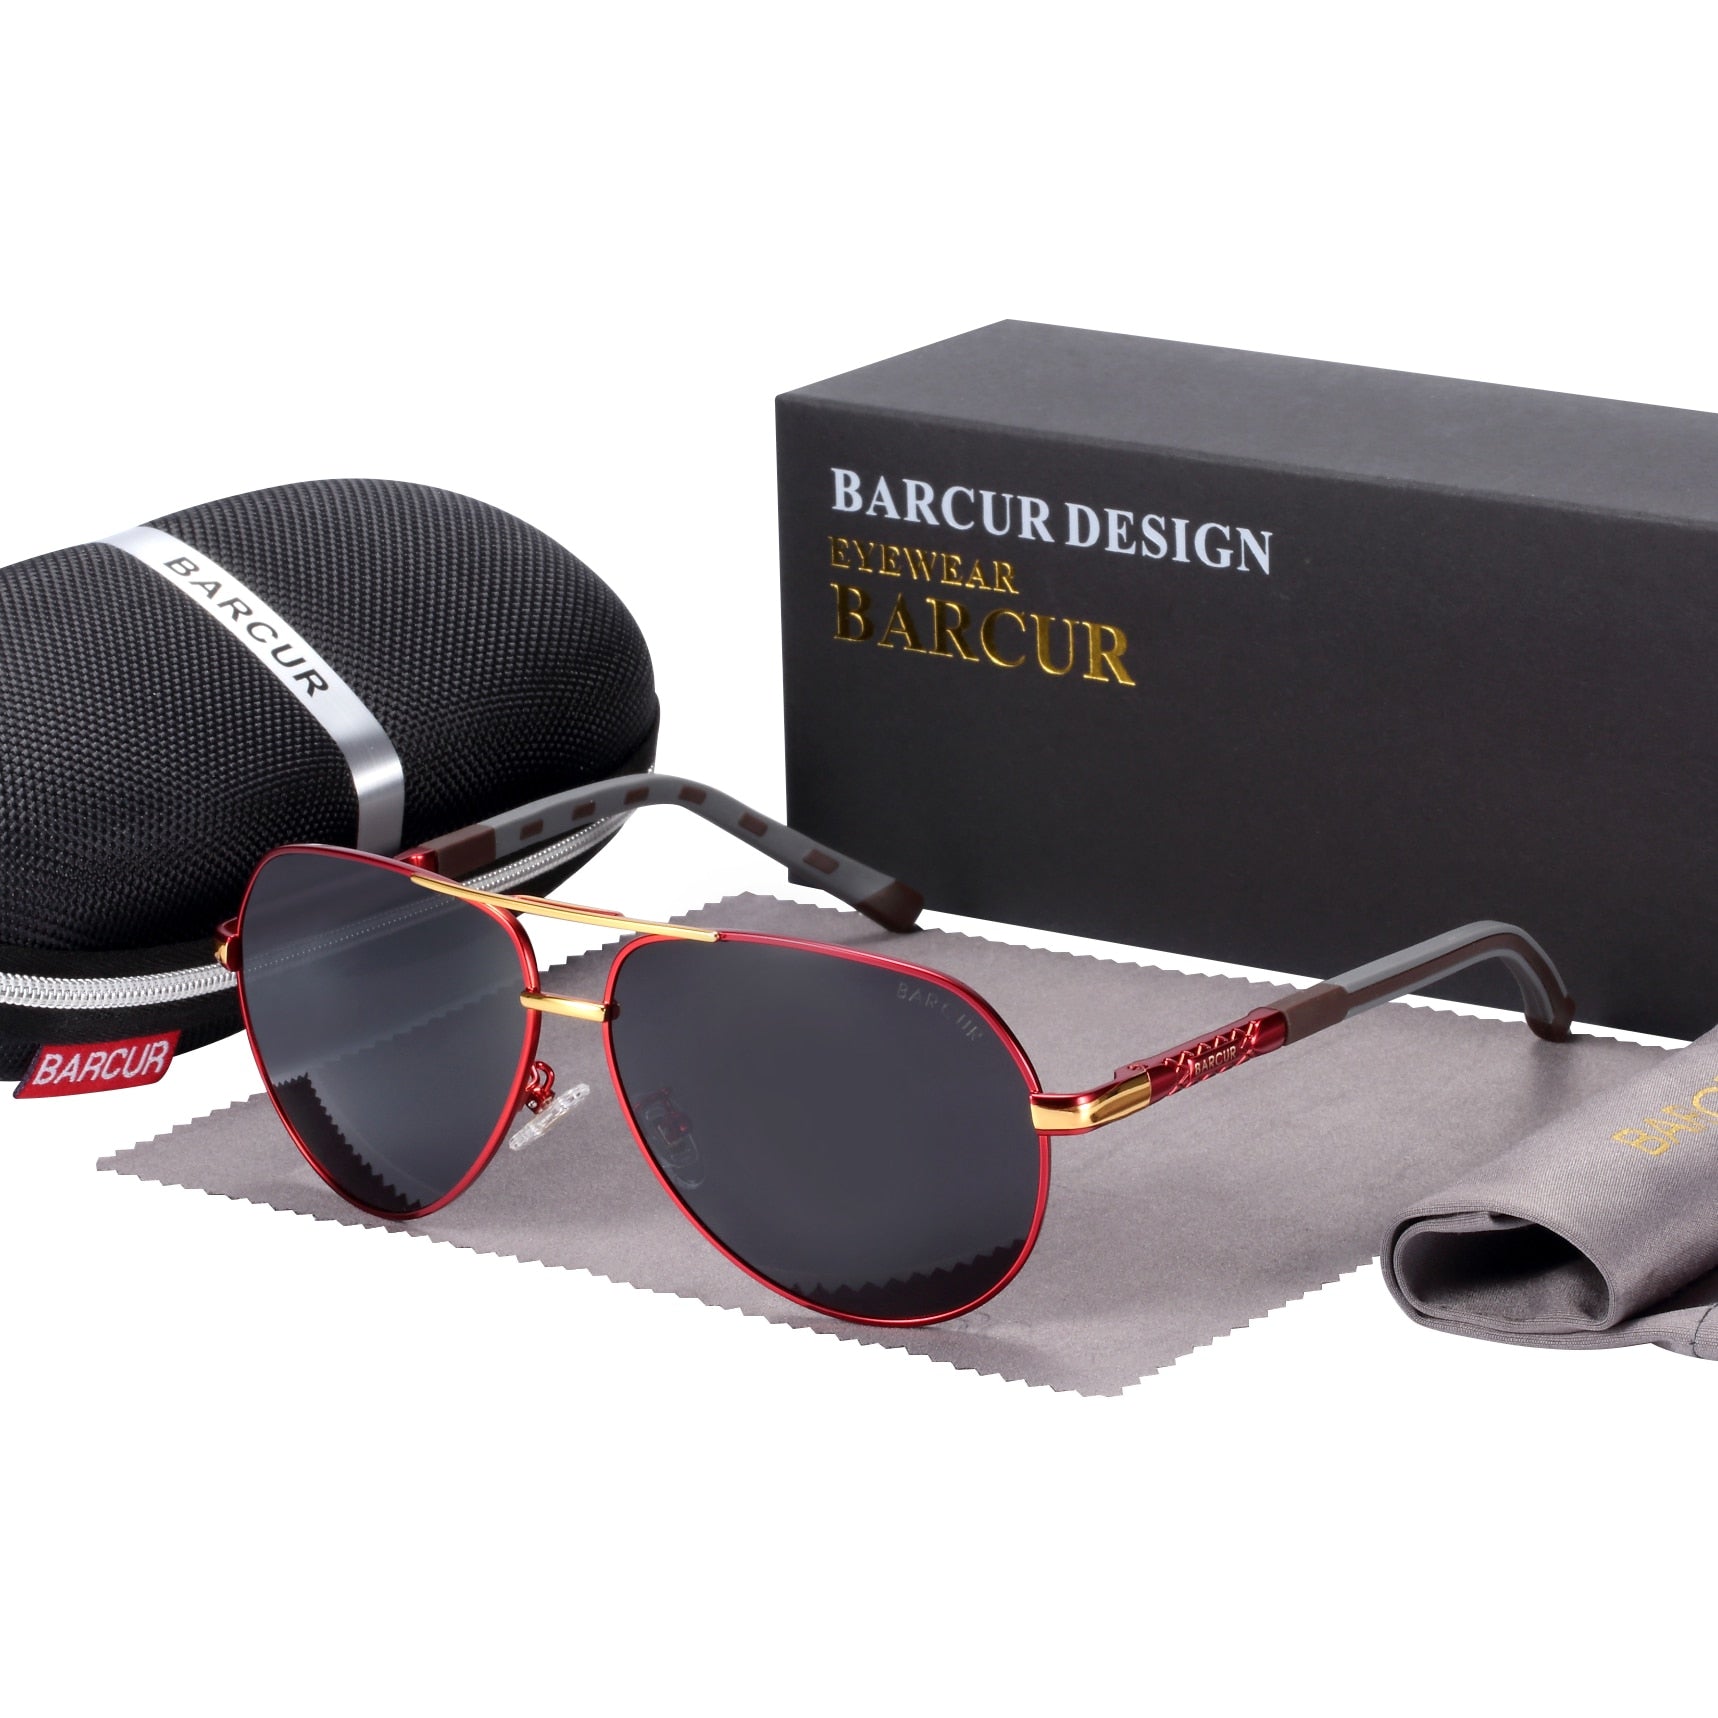 Red frame with black lens Barcur Vintage Aviator sunglasses